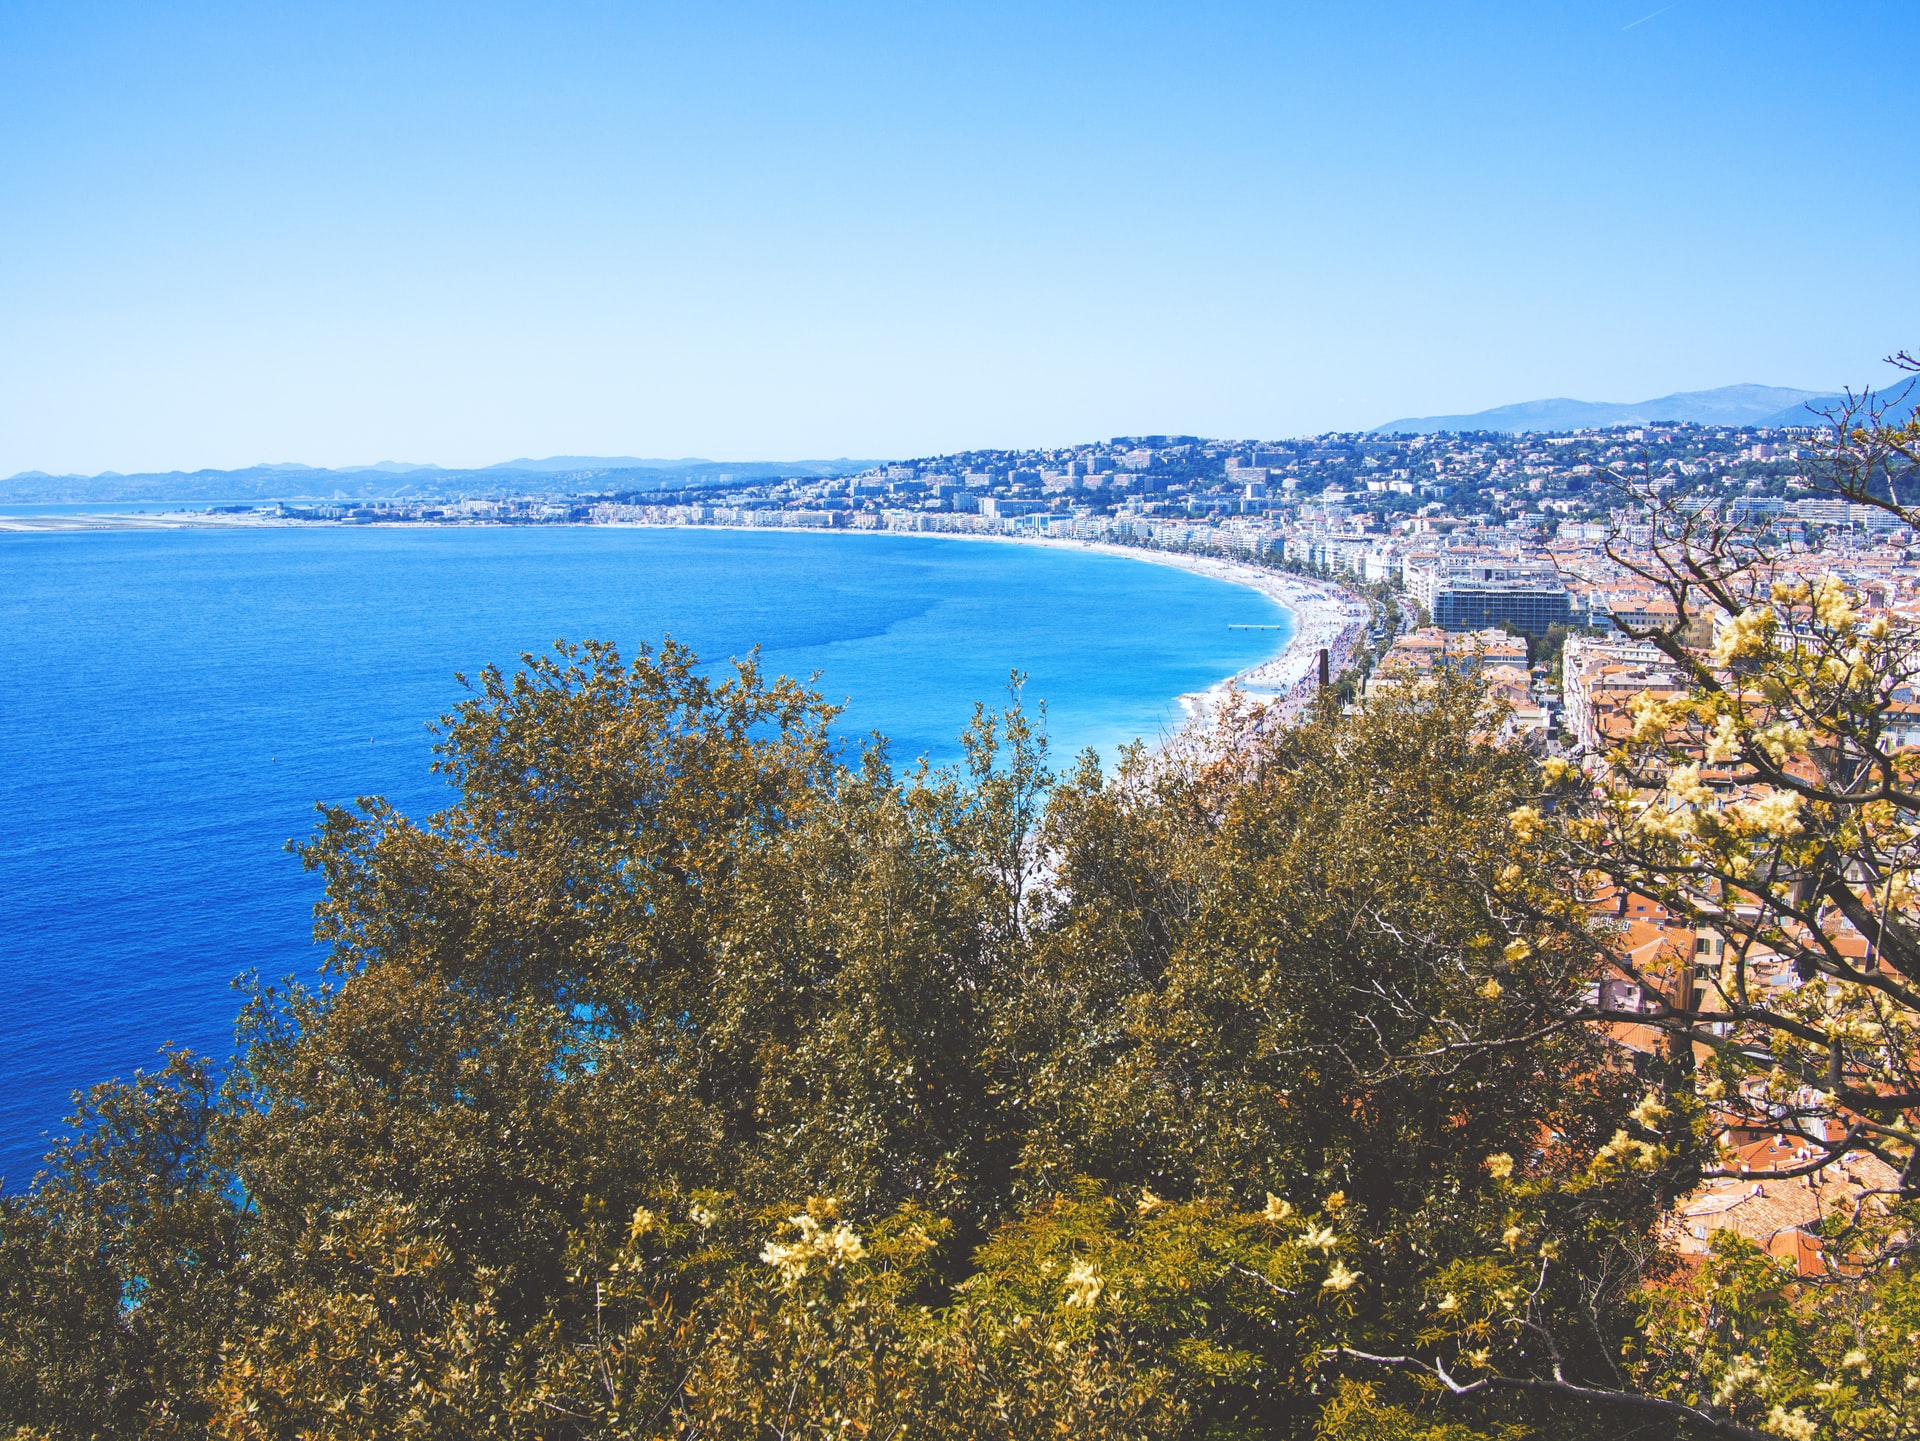 Acheter et investir à Nice : quels quartiers privilégier ?